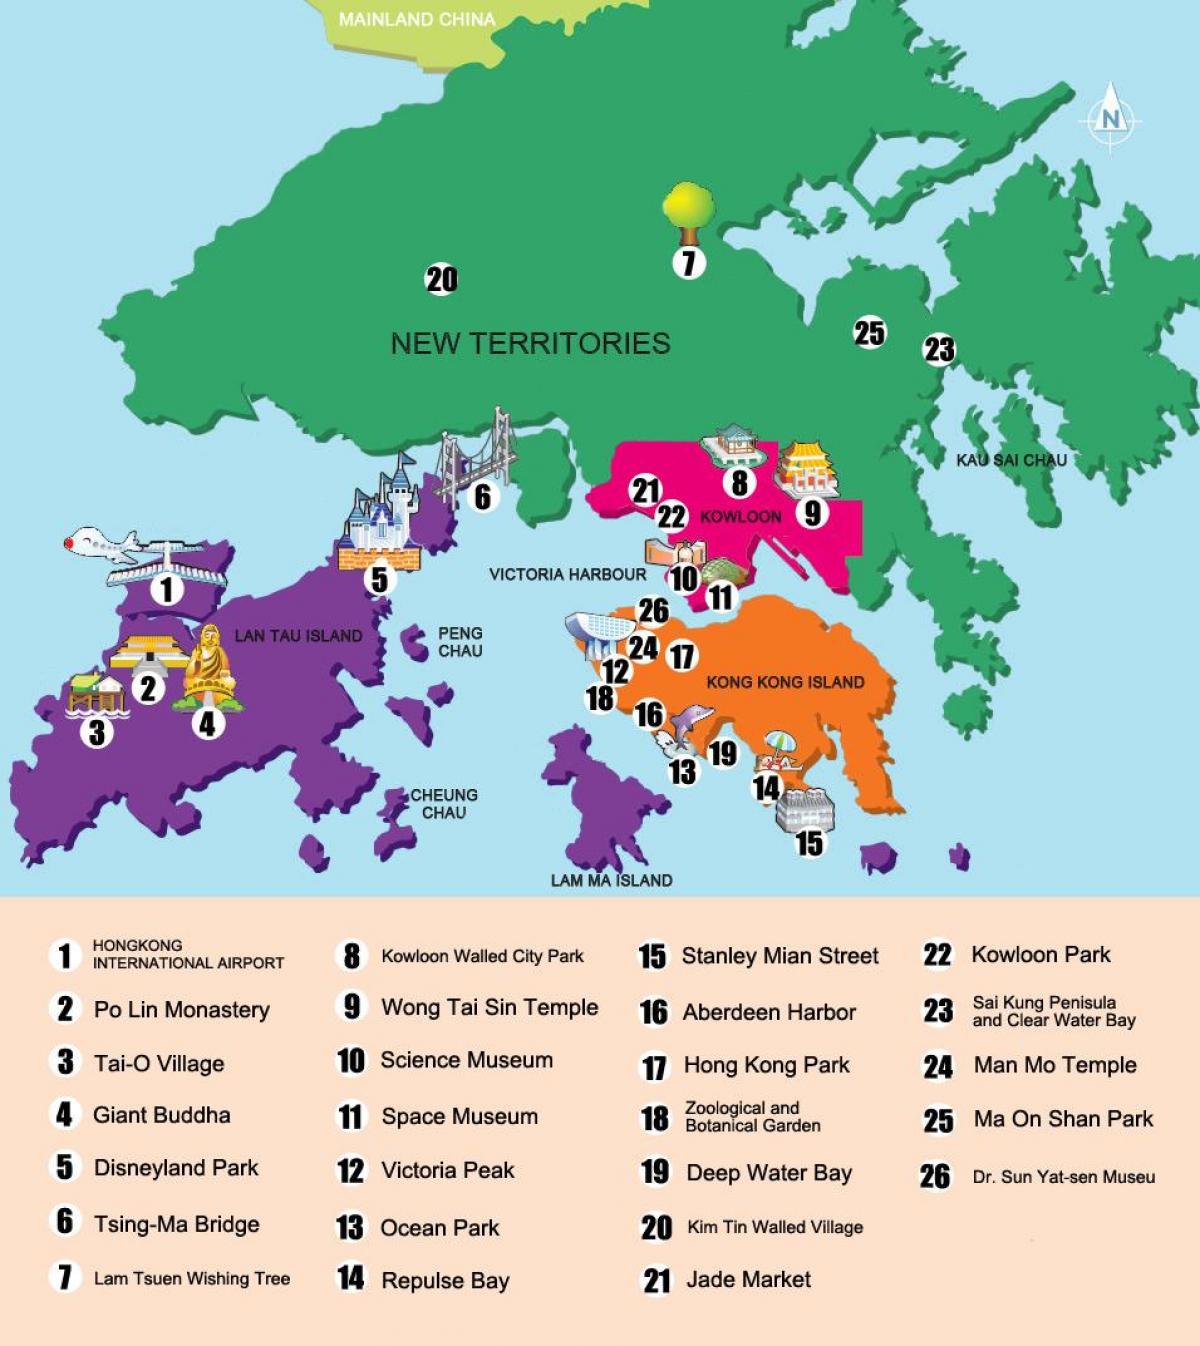 χάρτης των νέων εδαφών Χονγκ Κονγκ